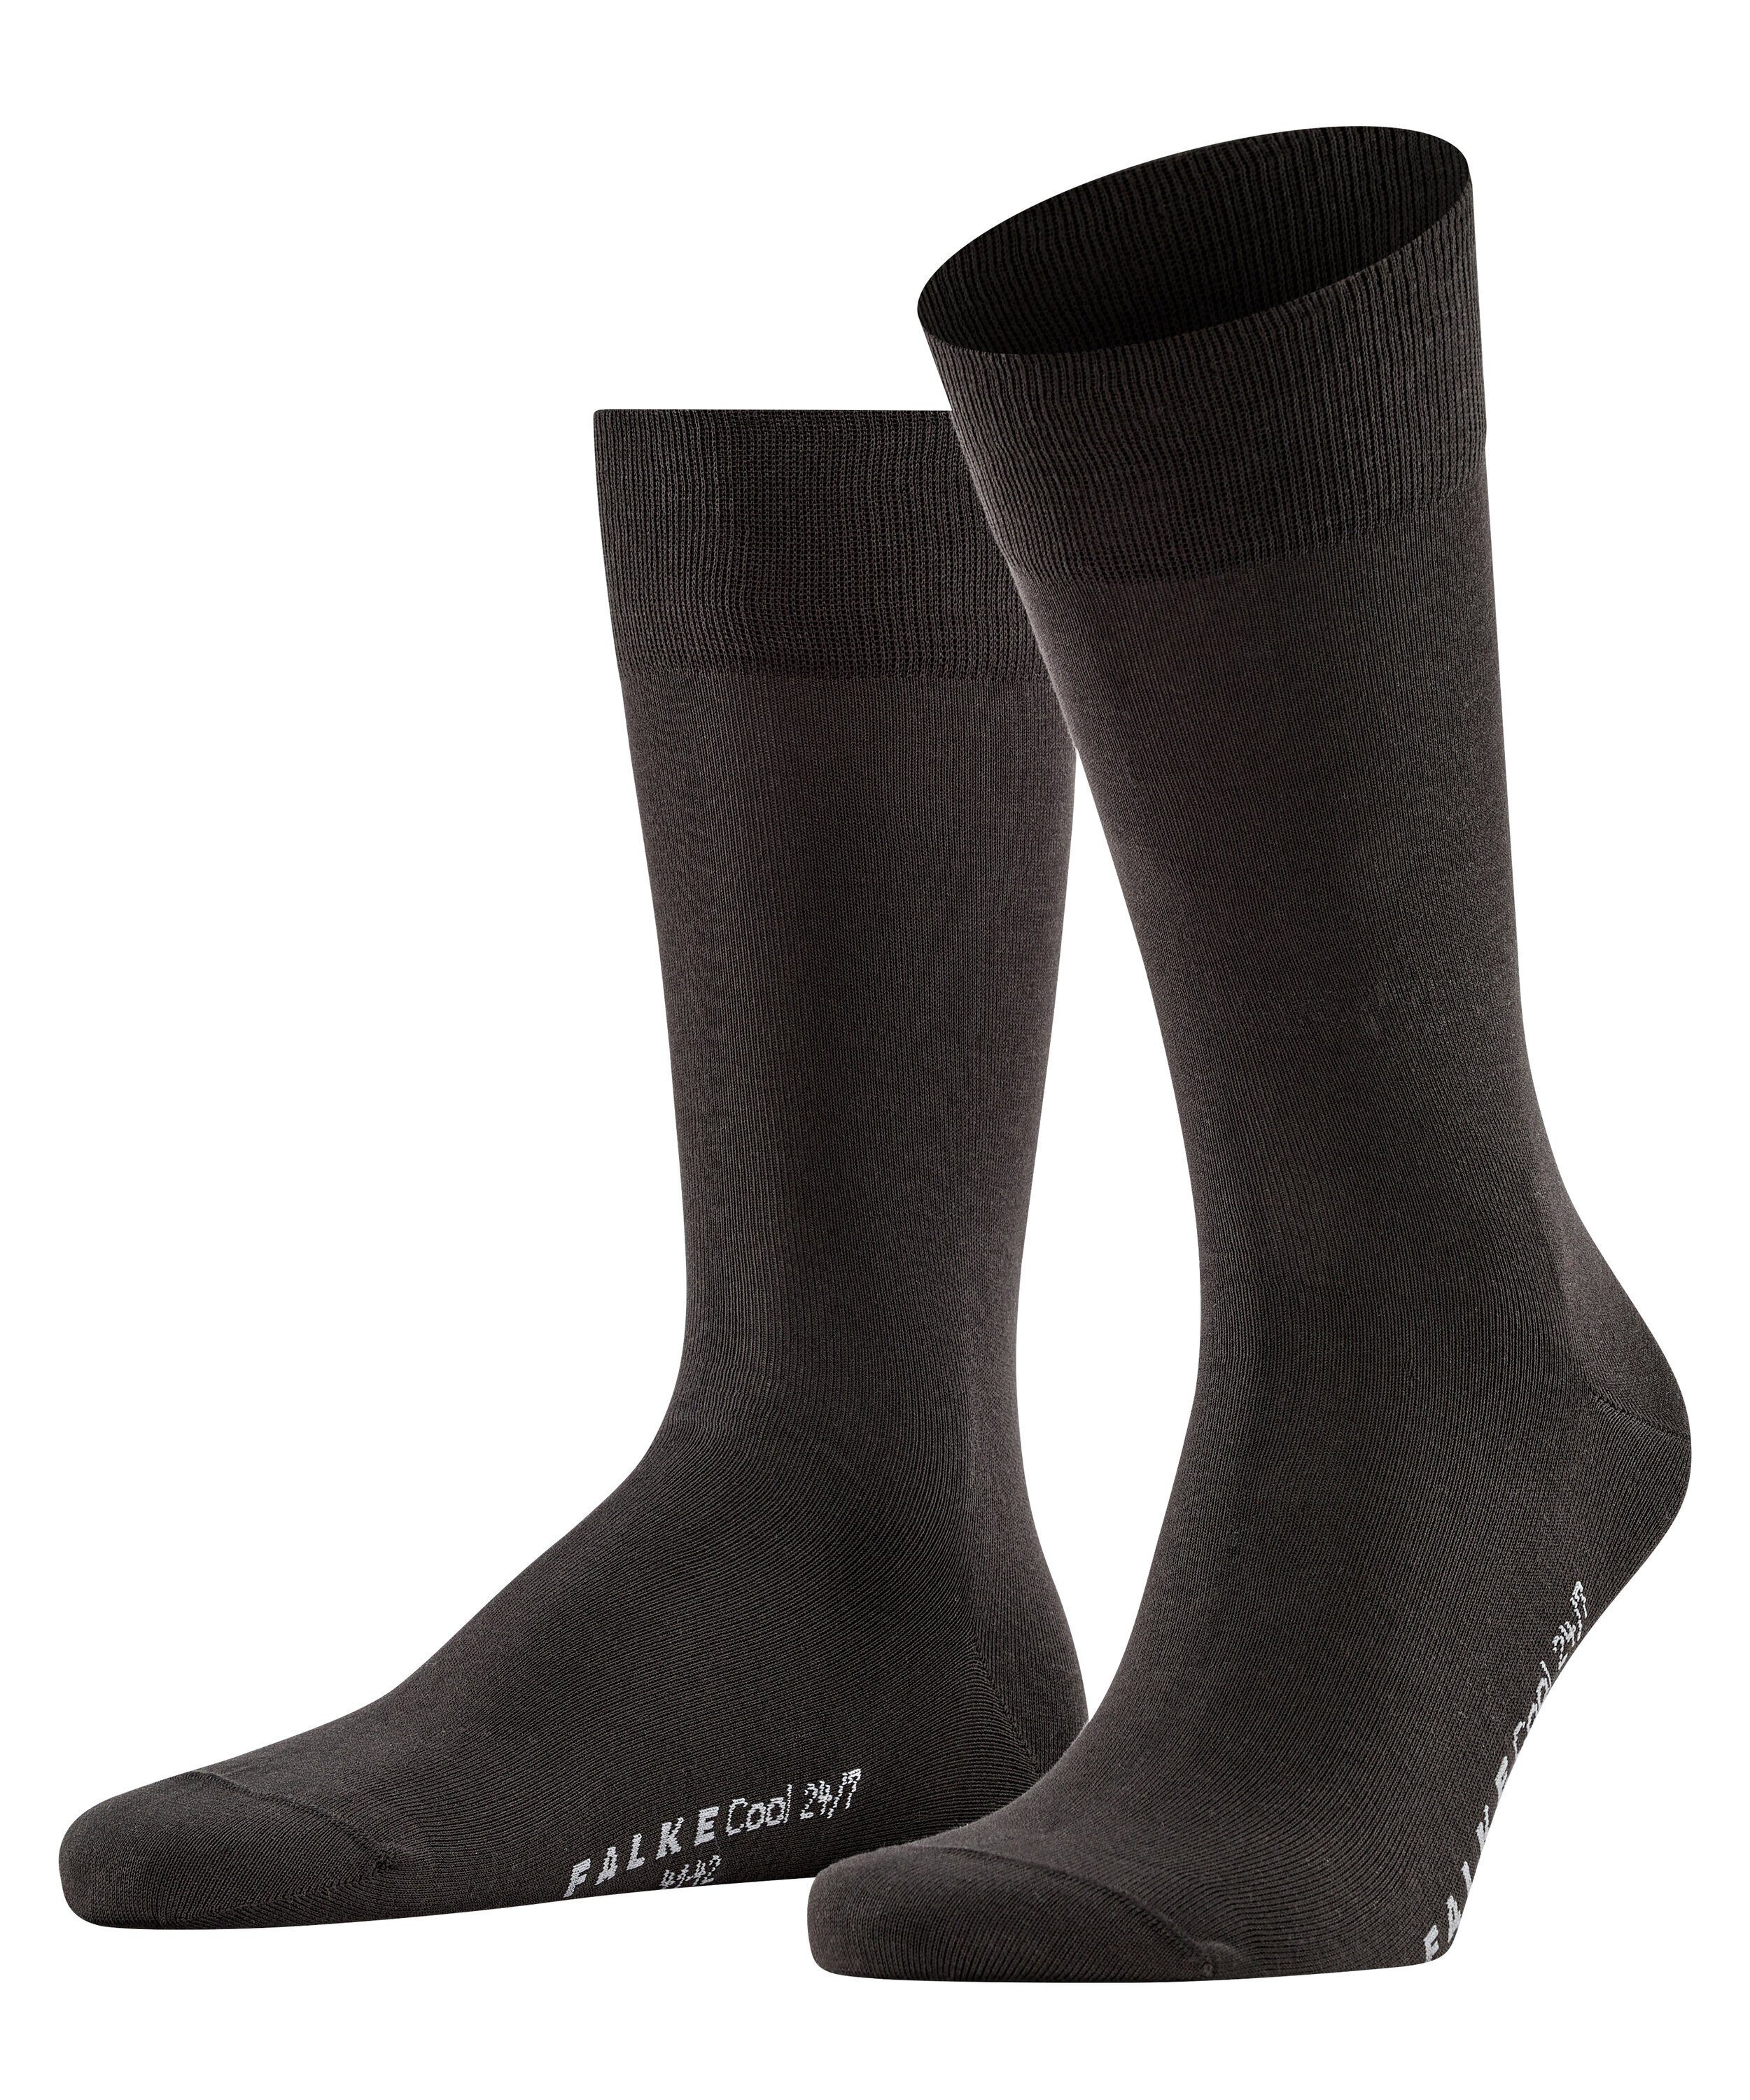 FALKE Socken Cool 24/7 (1-Paar) brown (5930)